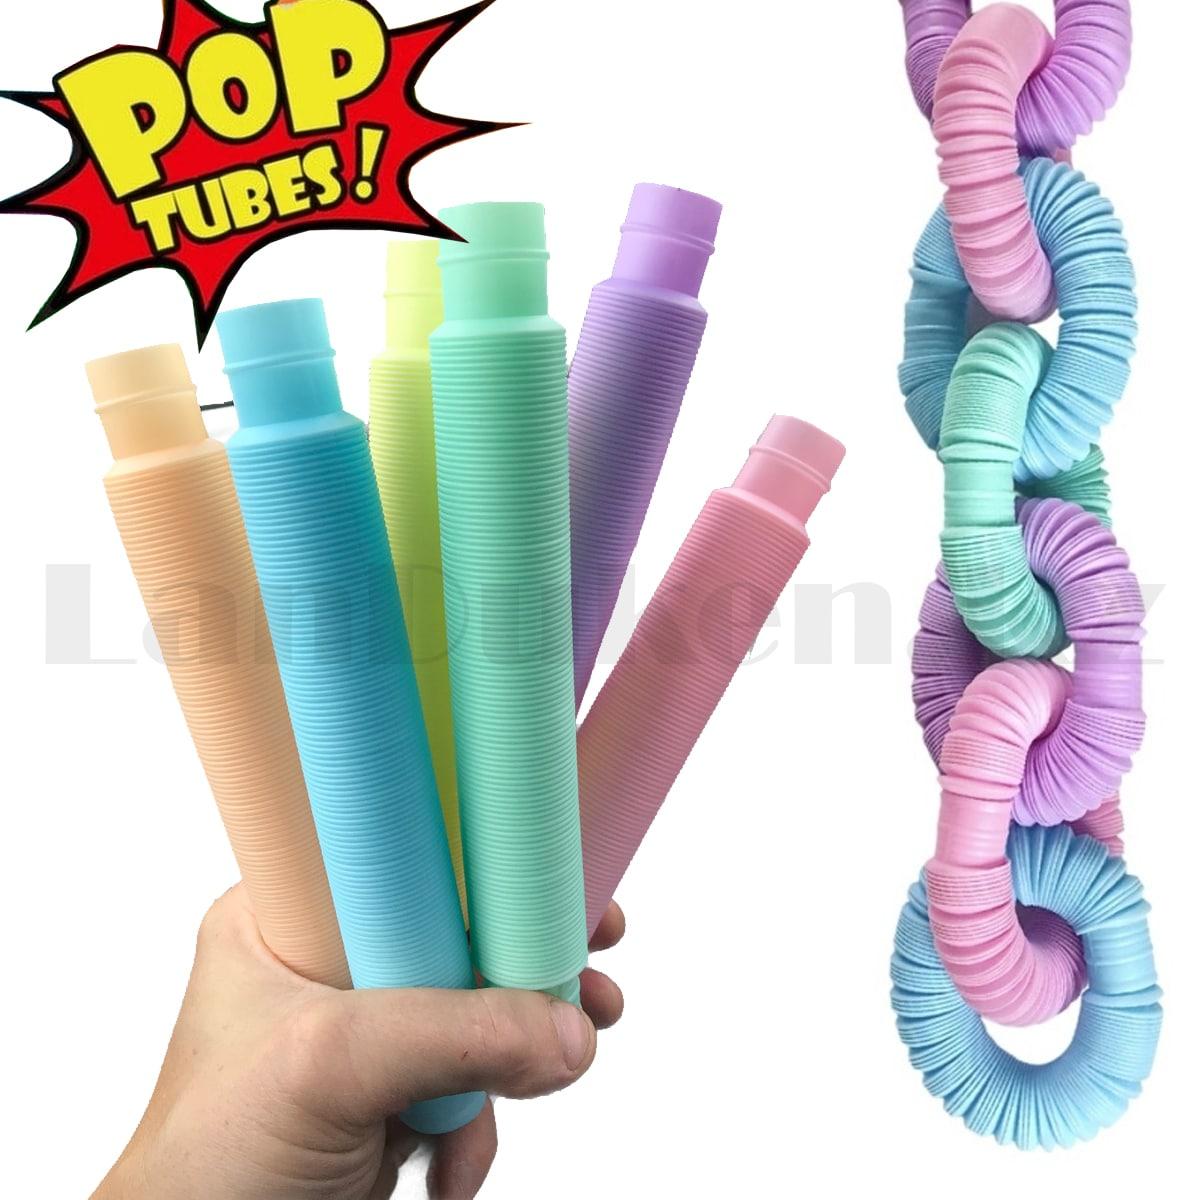 Игрушка антистресс трубка Pop Tubes цвета пастельные в ассортименте, фото 1